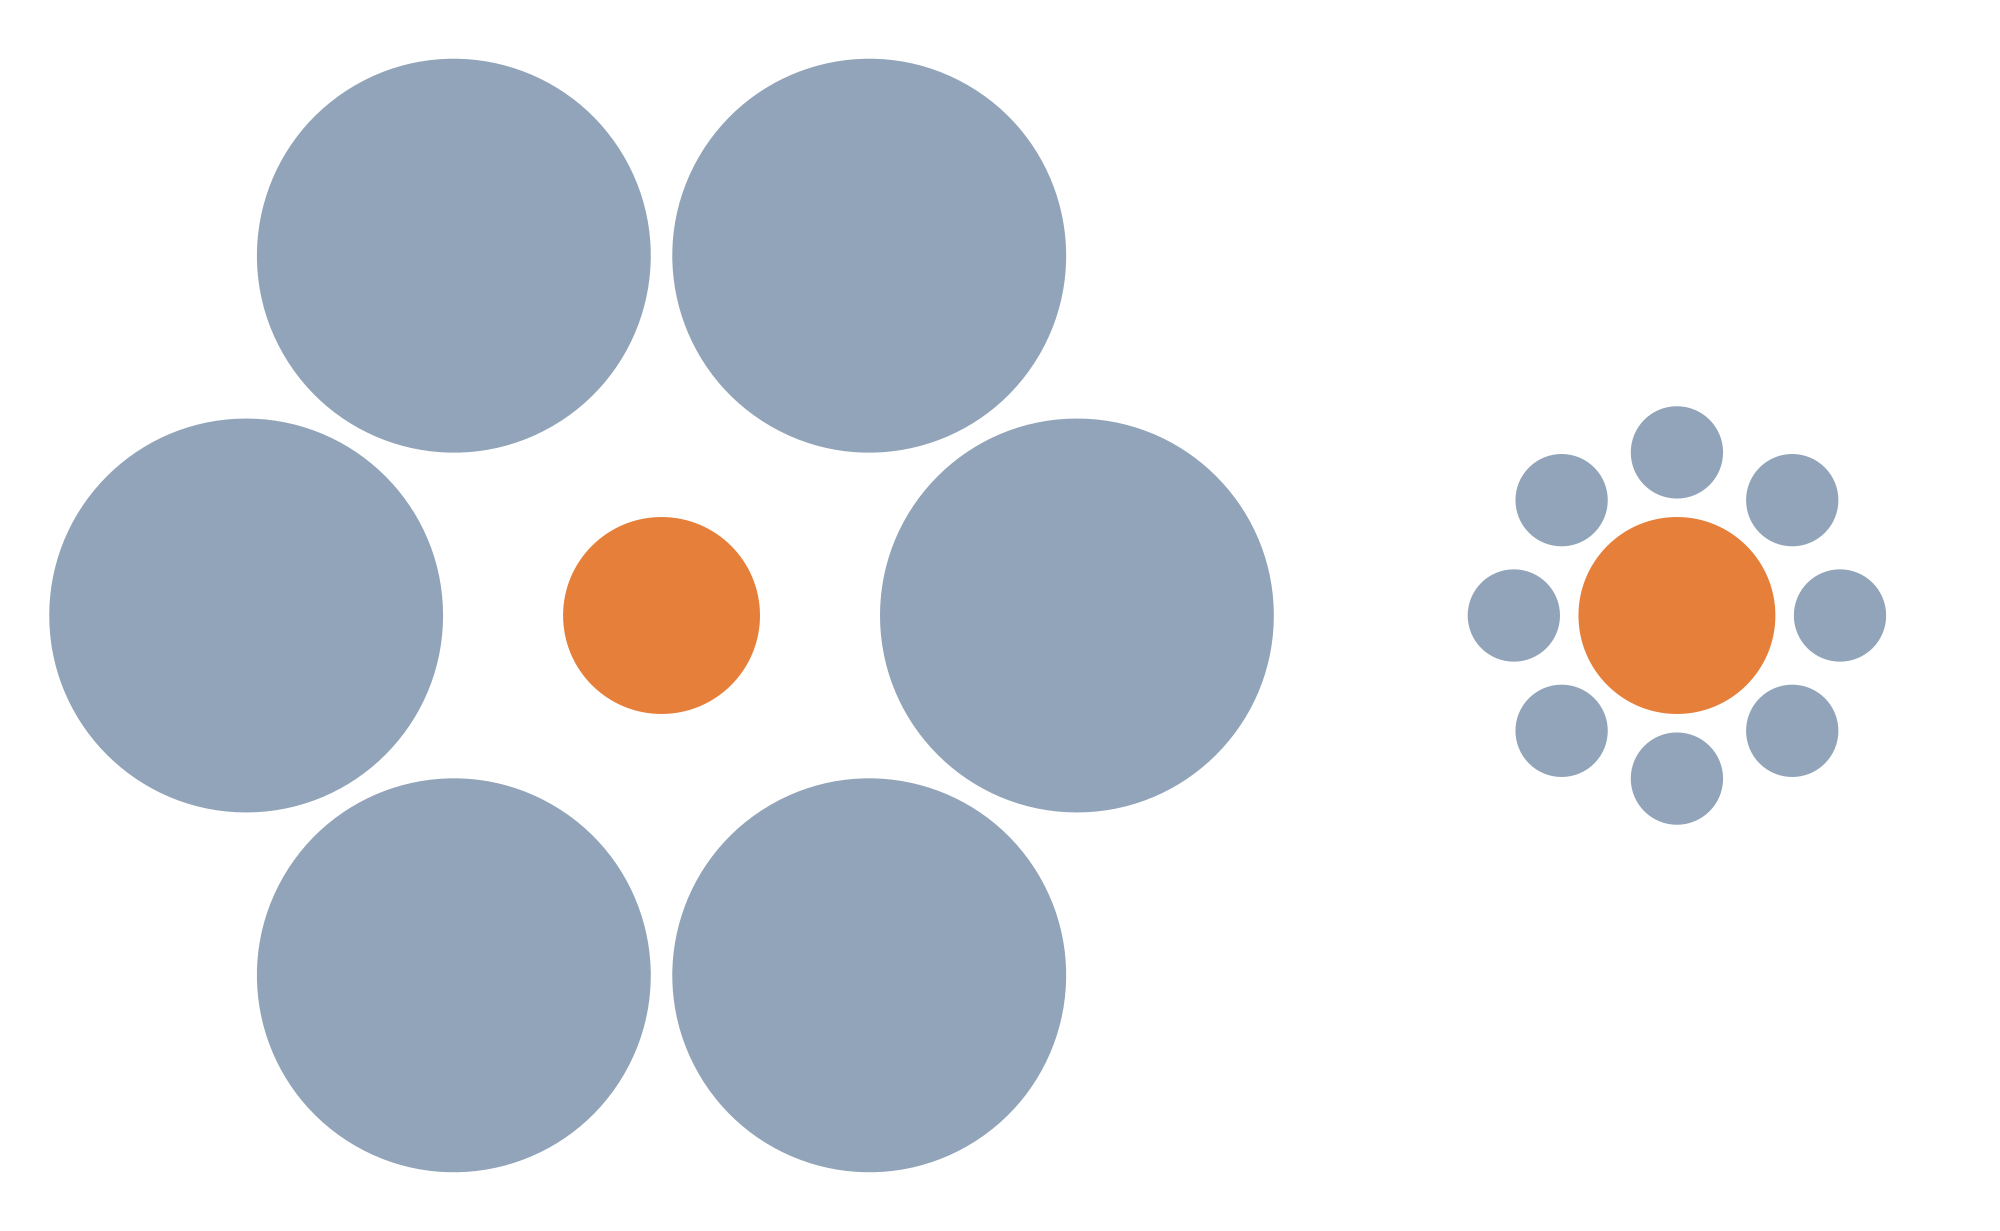 В изображенной выше иллюзии Эббингауза (это тот самый психолог, который прославился исследованием памяти и в честь которого названа кривая Эббингауза; кстати, эту иллюзию еще называют кругами Титченера) оранжевые кружки, на самом деле имеют одинаковый размер